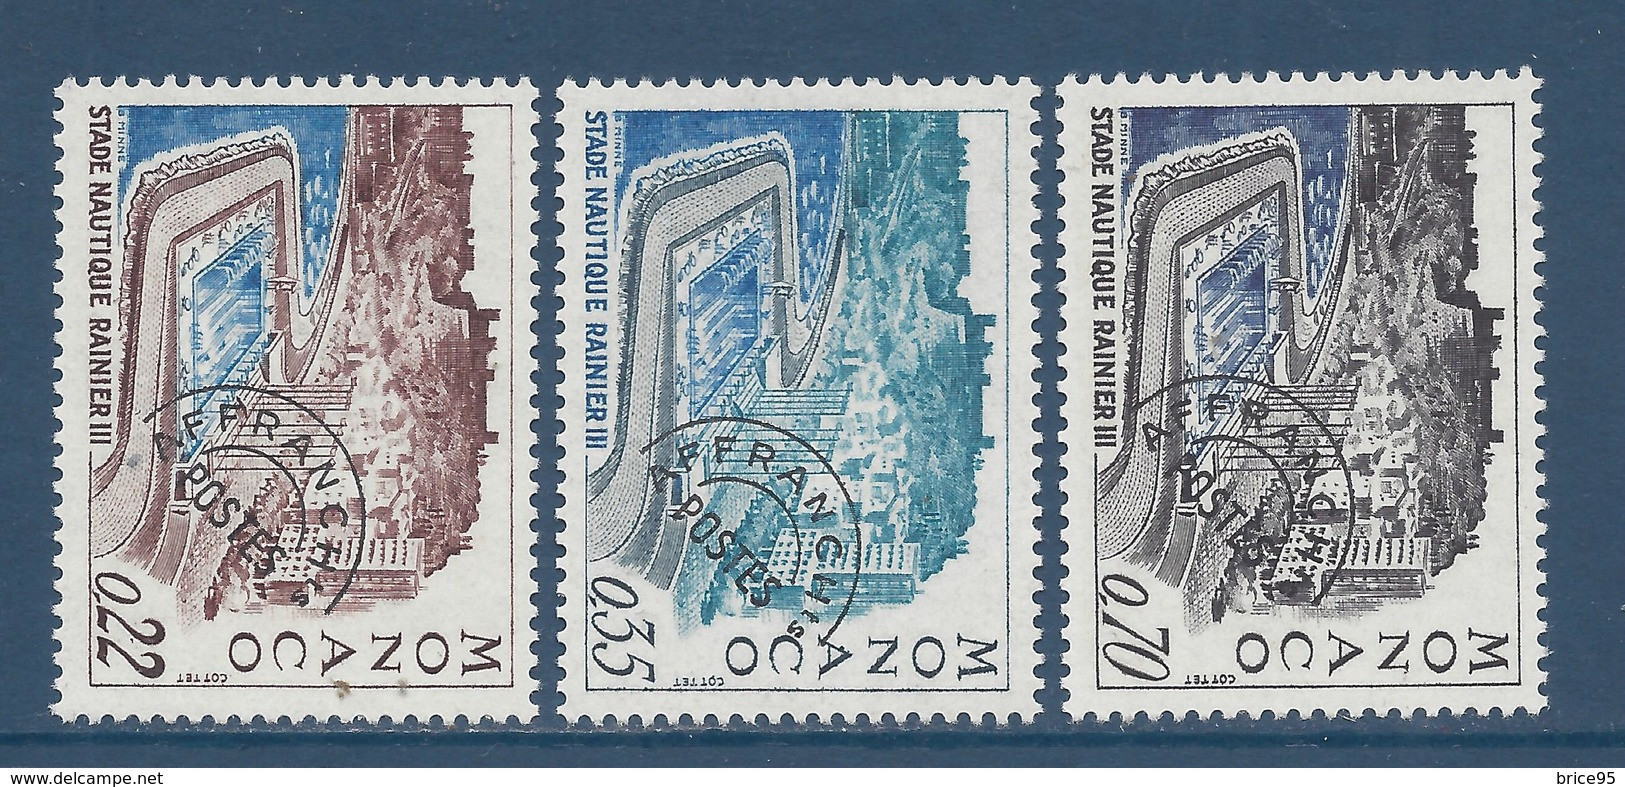 Monaco Préoblitéré - YT N° 27 à 29 ** - Neuf Sans Charnière - 1969 - Préoblitérés